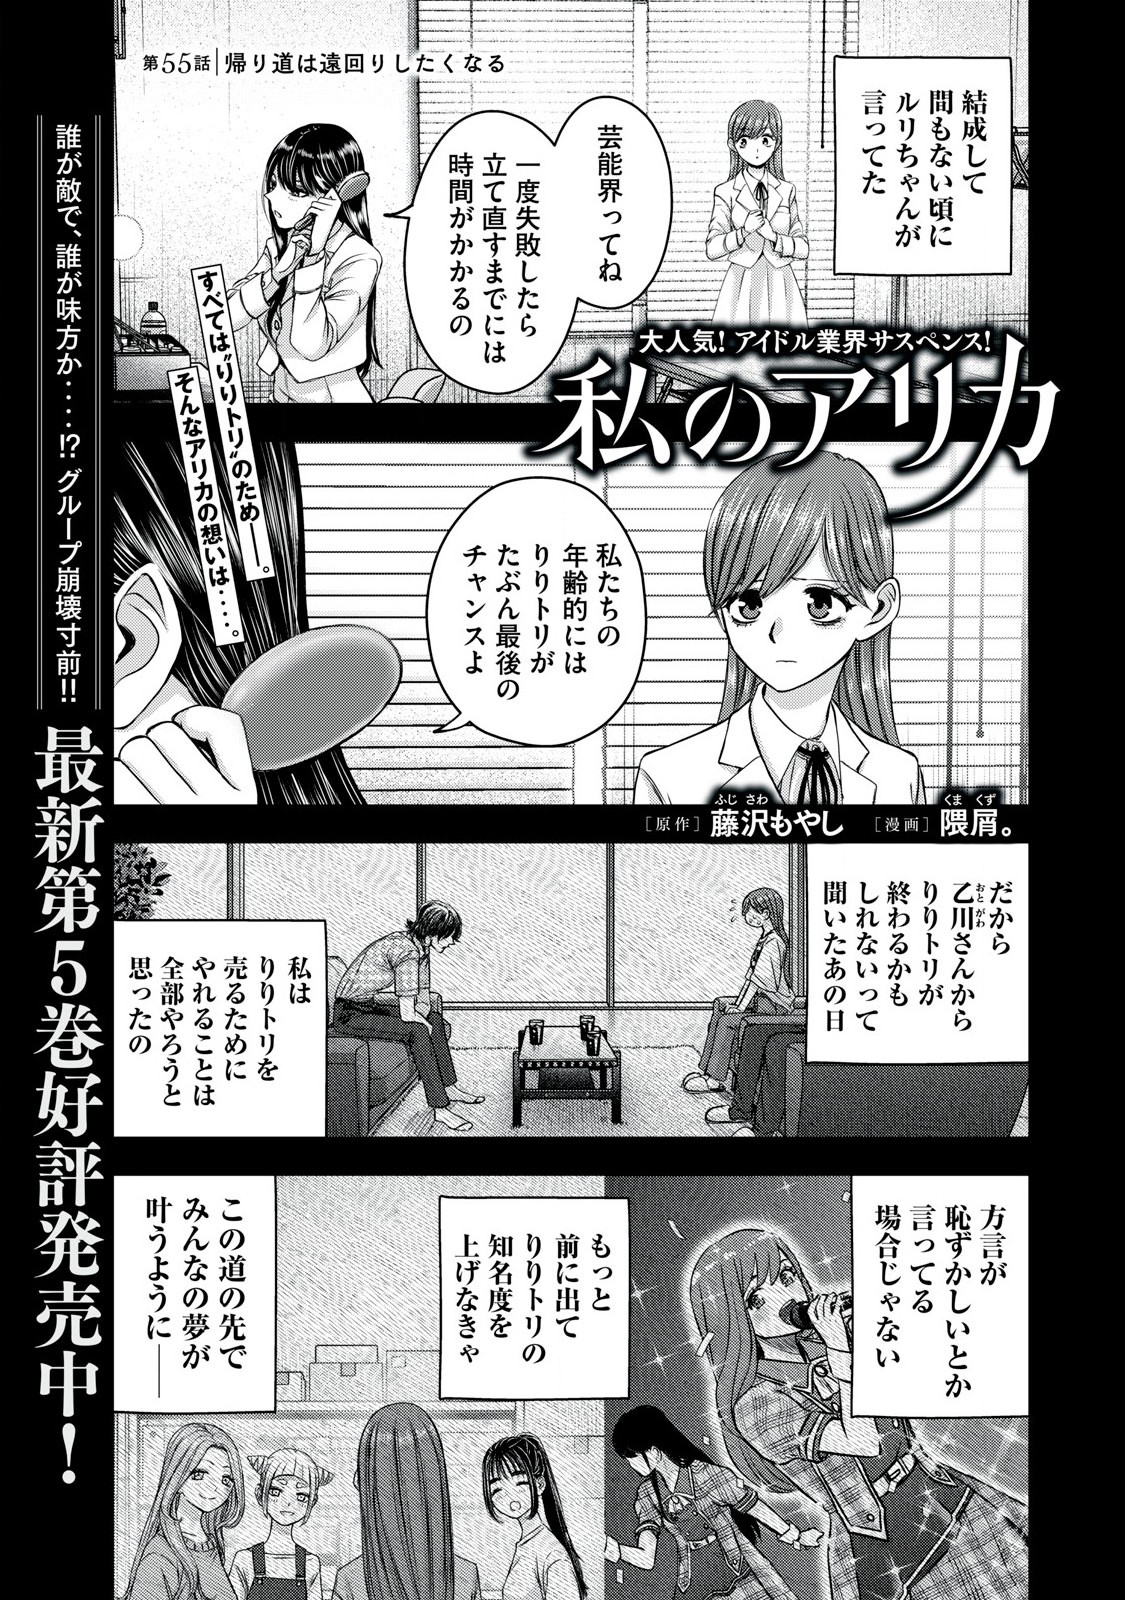 Watashi no Arika - Chapter 55 - Page 1